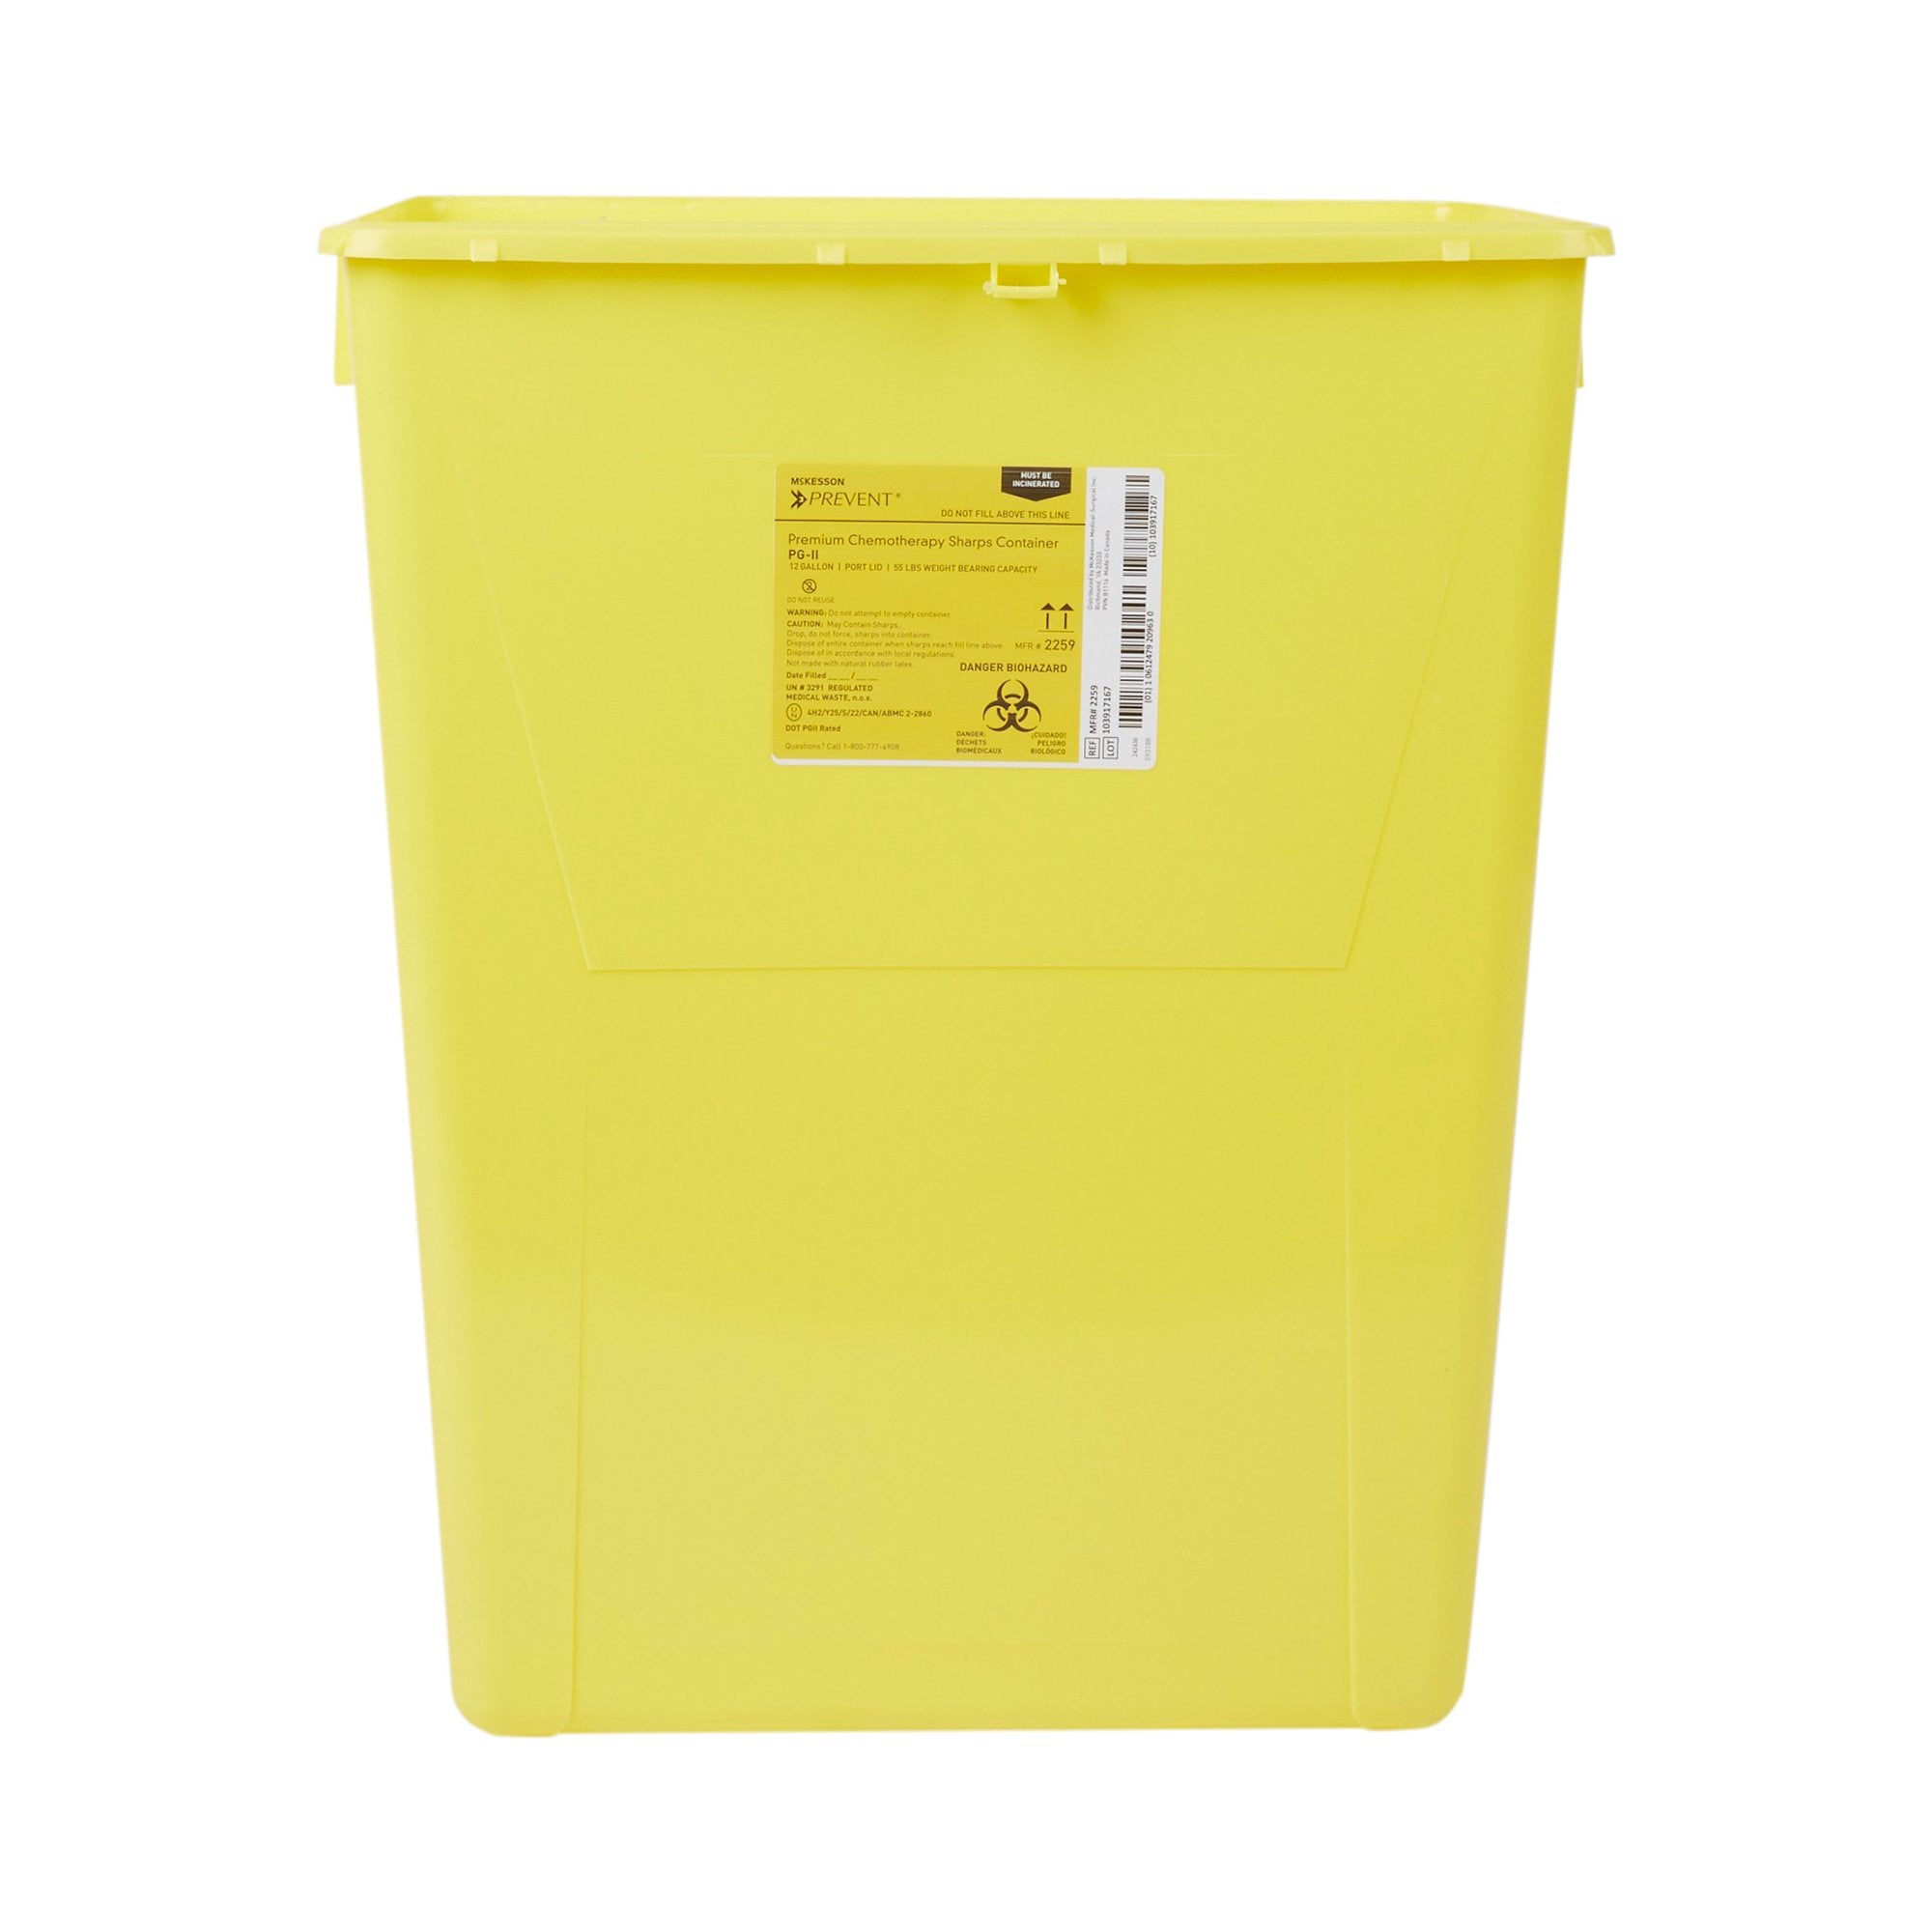 McKesson Prevent® Chemotherapy Sharps Container, 12 Gallon, 20-4/5 x 17-3/10 x 13 Inch (1 Unit)